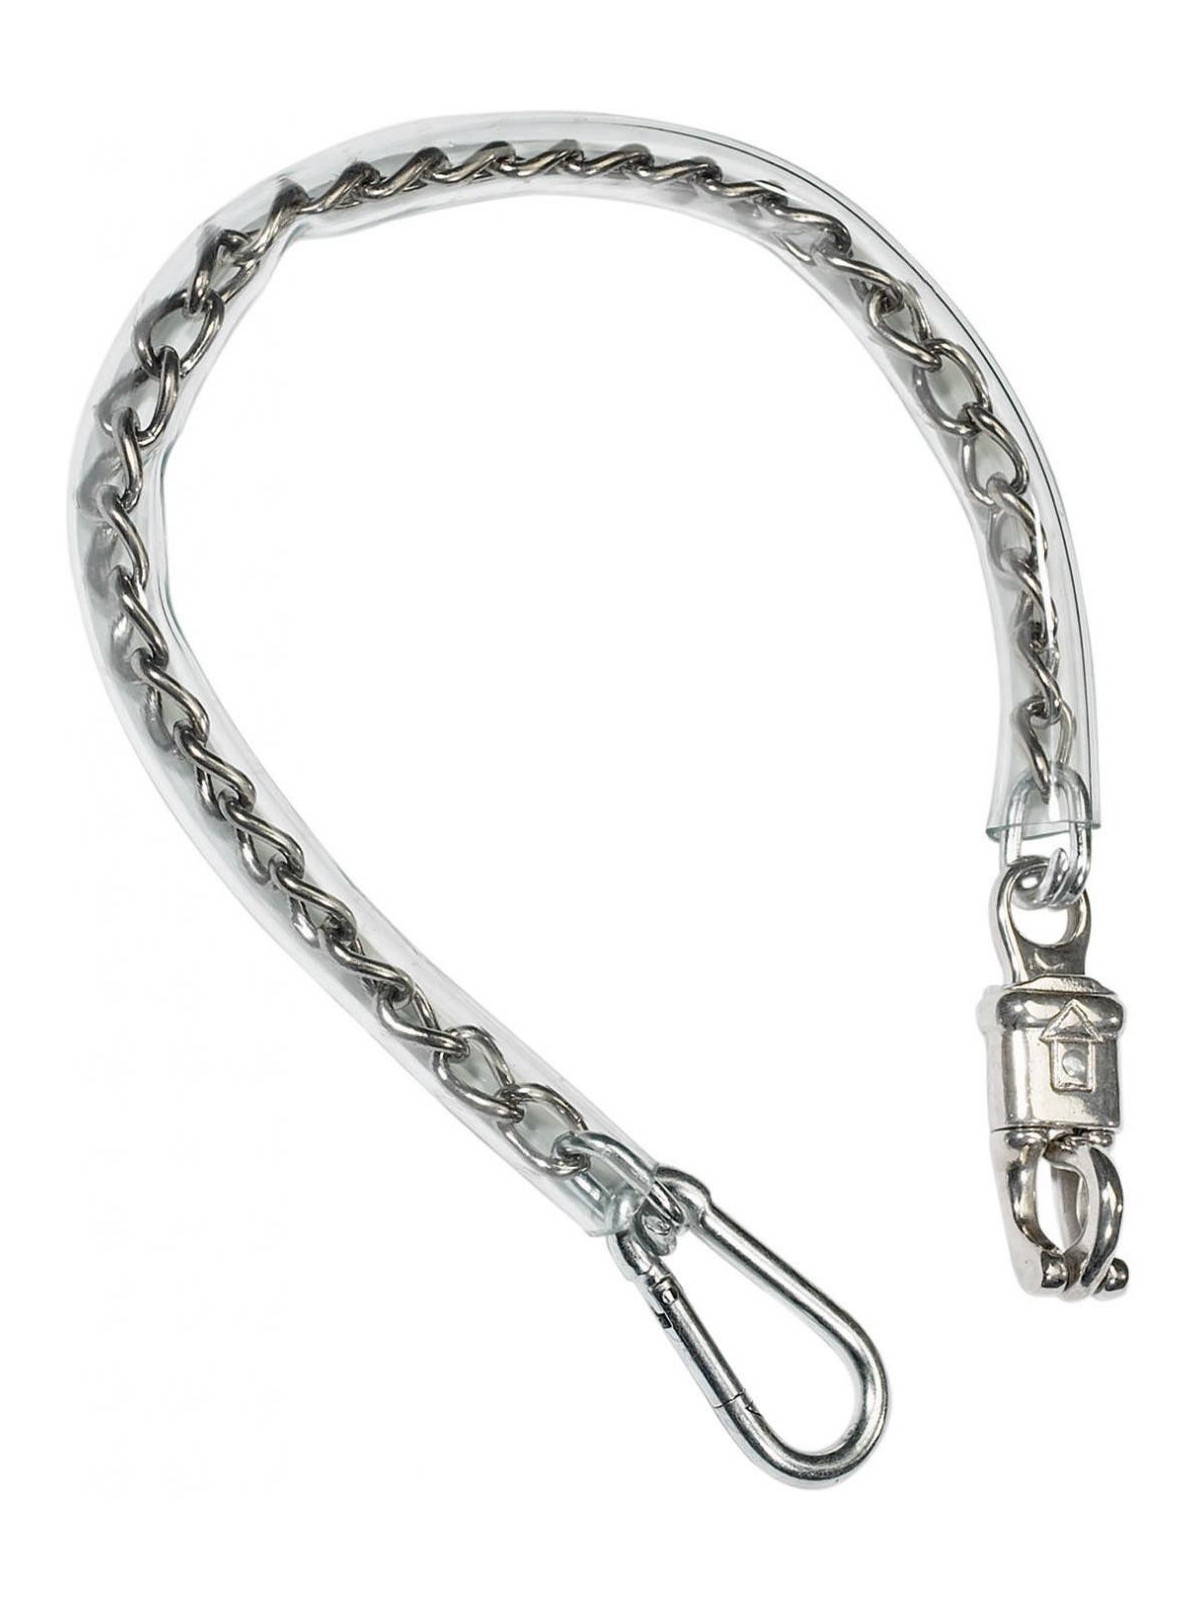 BUSSE Chain Tie  45 cm / 75 cm